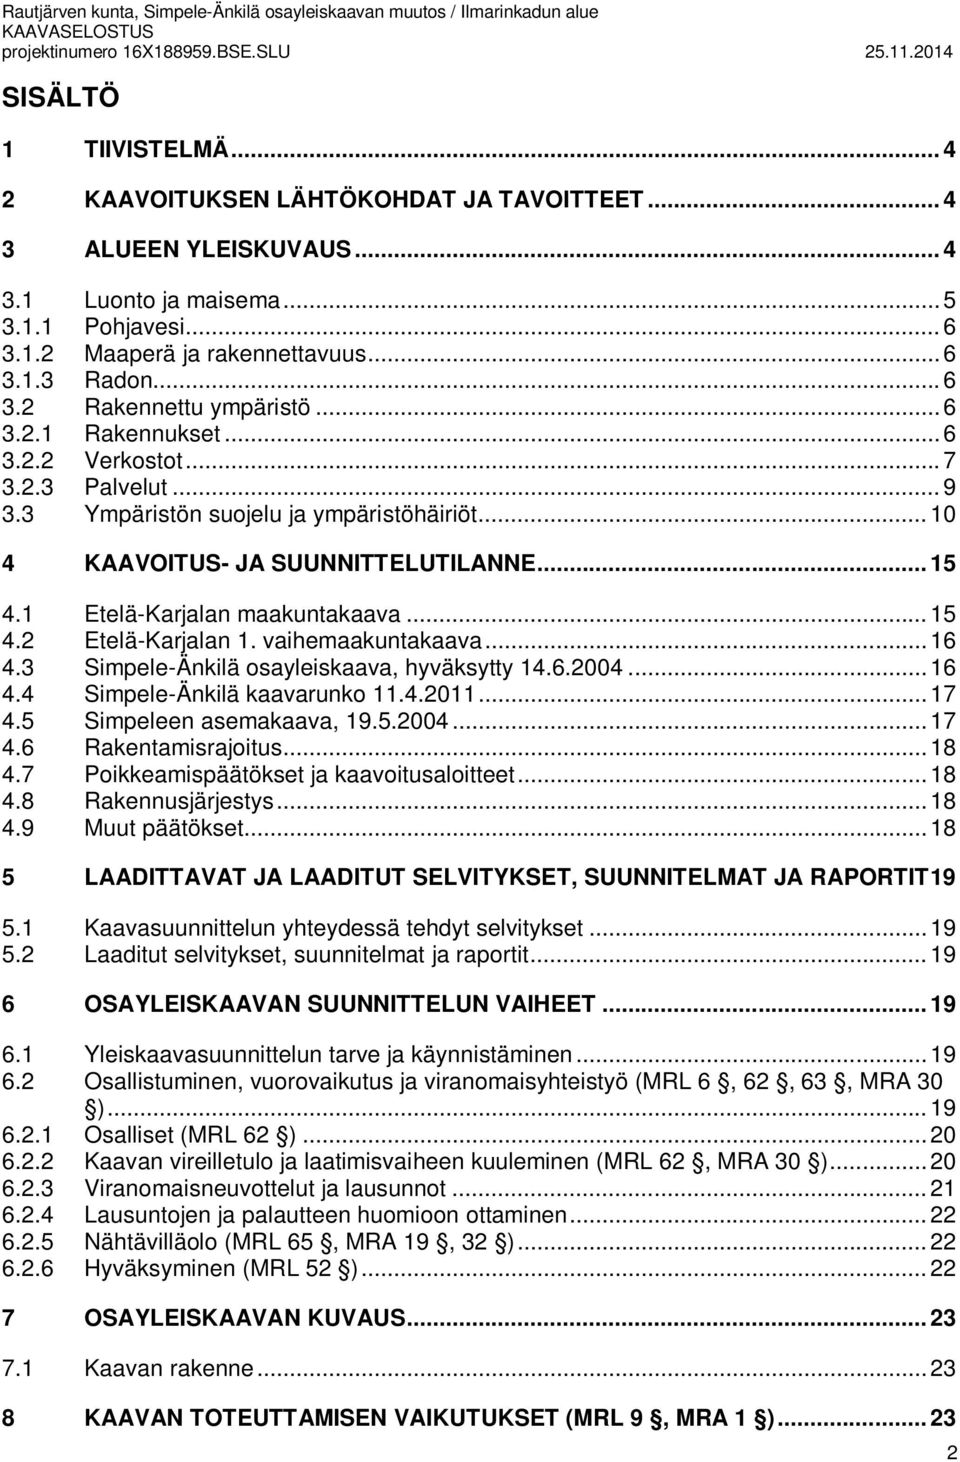 .. 15 4.1 Etelä-Karjalan maakuntakaava... 15 4.2 Etelä-Karjalan 1. vaihemaakuntakaava... 16 4.3 Simpele-Änkilä osayleiskaava, hyväksytty 14.6.2004... 16 4.4 Simpele-Änkilä kaavarunko 11.4.2011... 17 4.